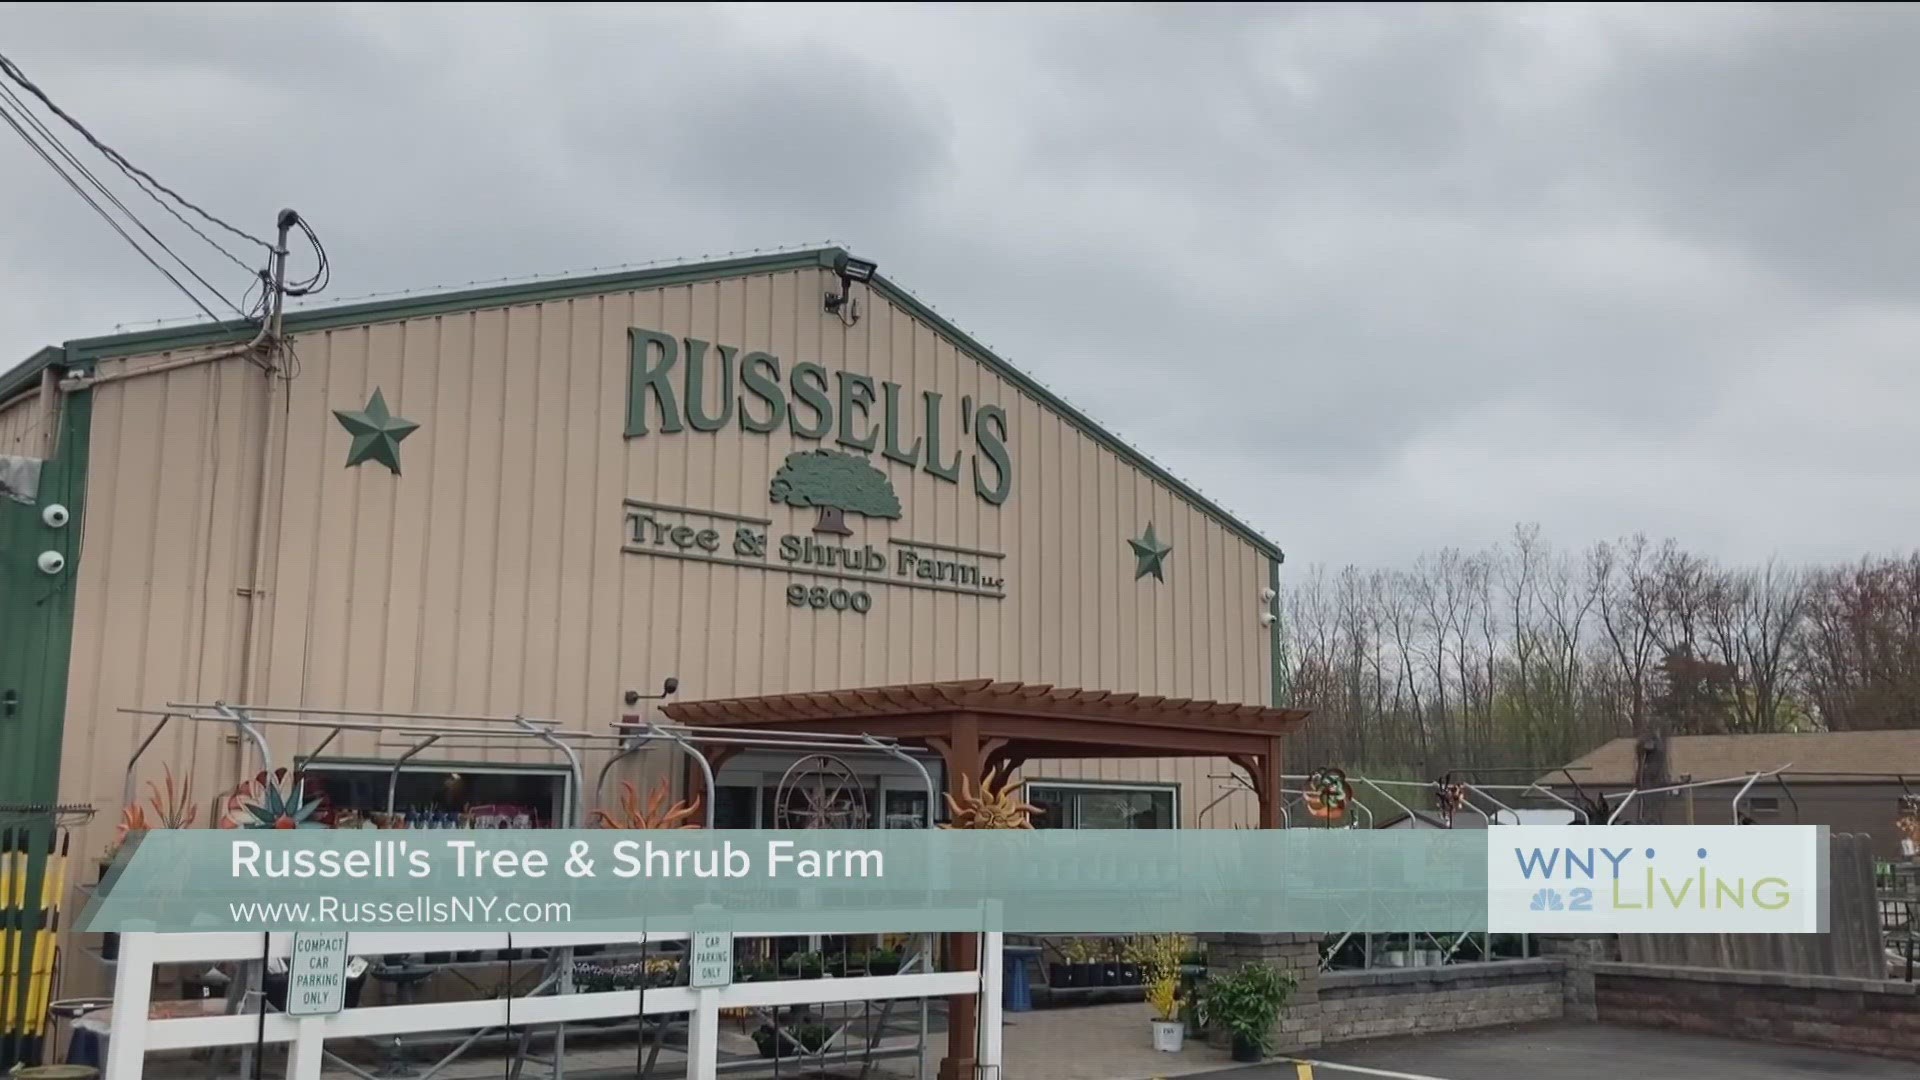 April 29th -WNY Living -Russell's Tree & Shrub Farm (THIS VIDEO IS SPONSORED BY RUSSELL'S TREE & SHRUB FARM)